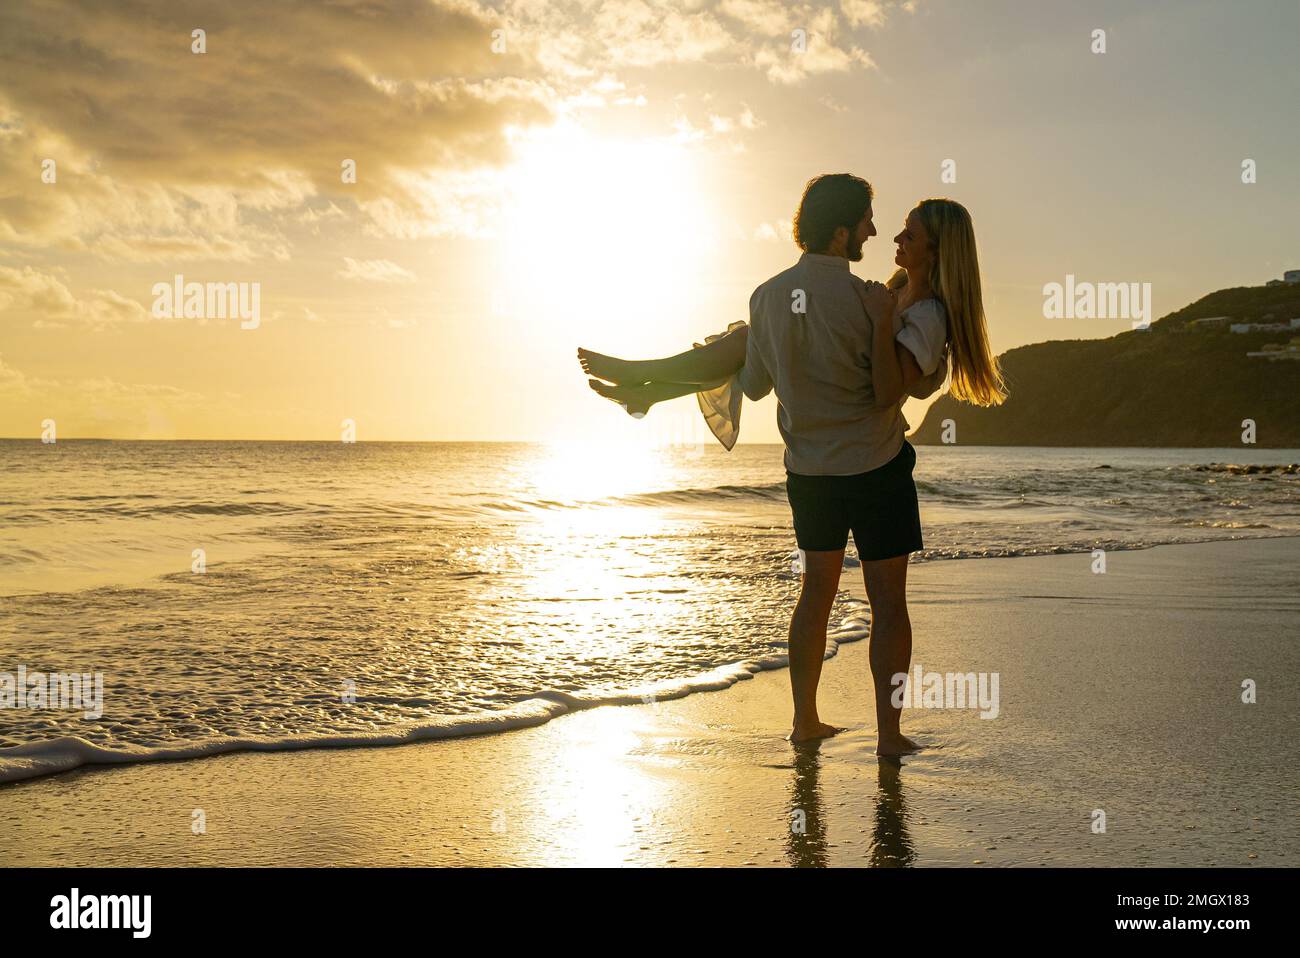 Hombre joven que sostiene a la mujer en la playa durante la puesta del sol mientras se miran en los ojos del otro Foto de stock